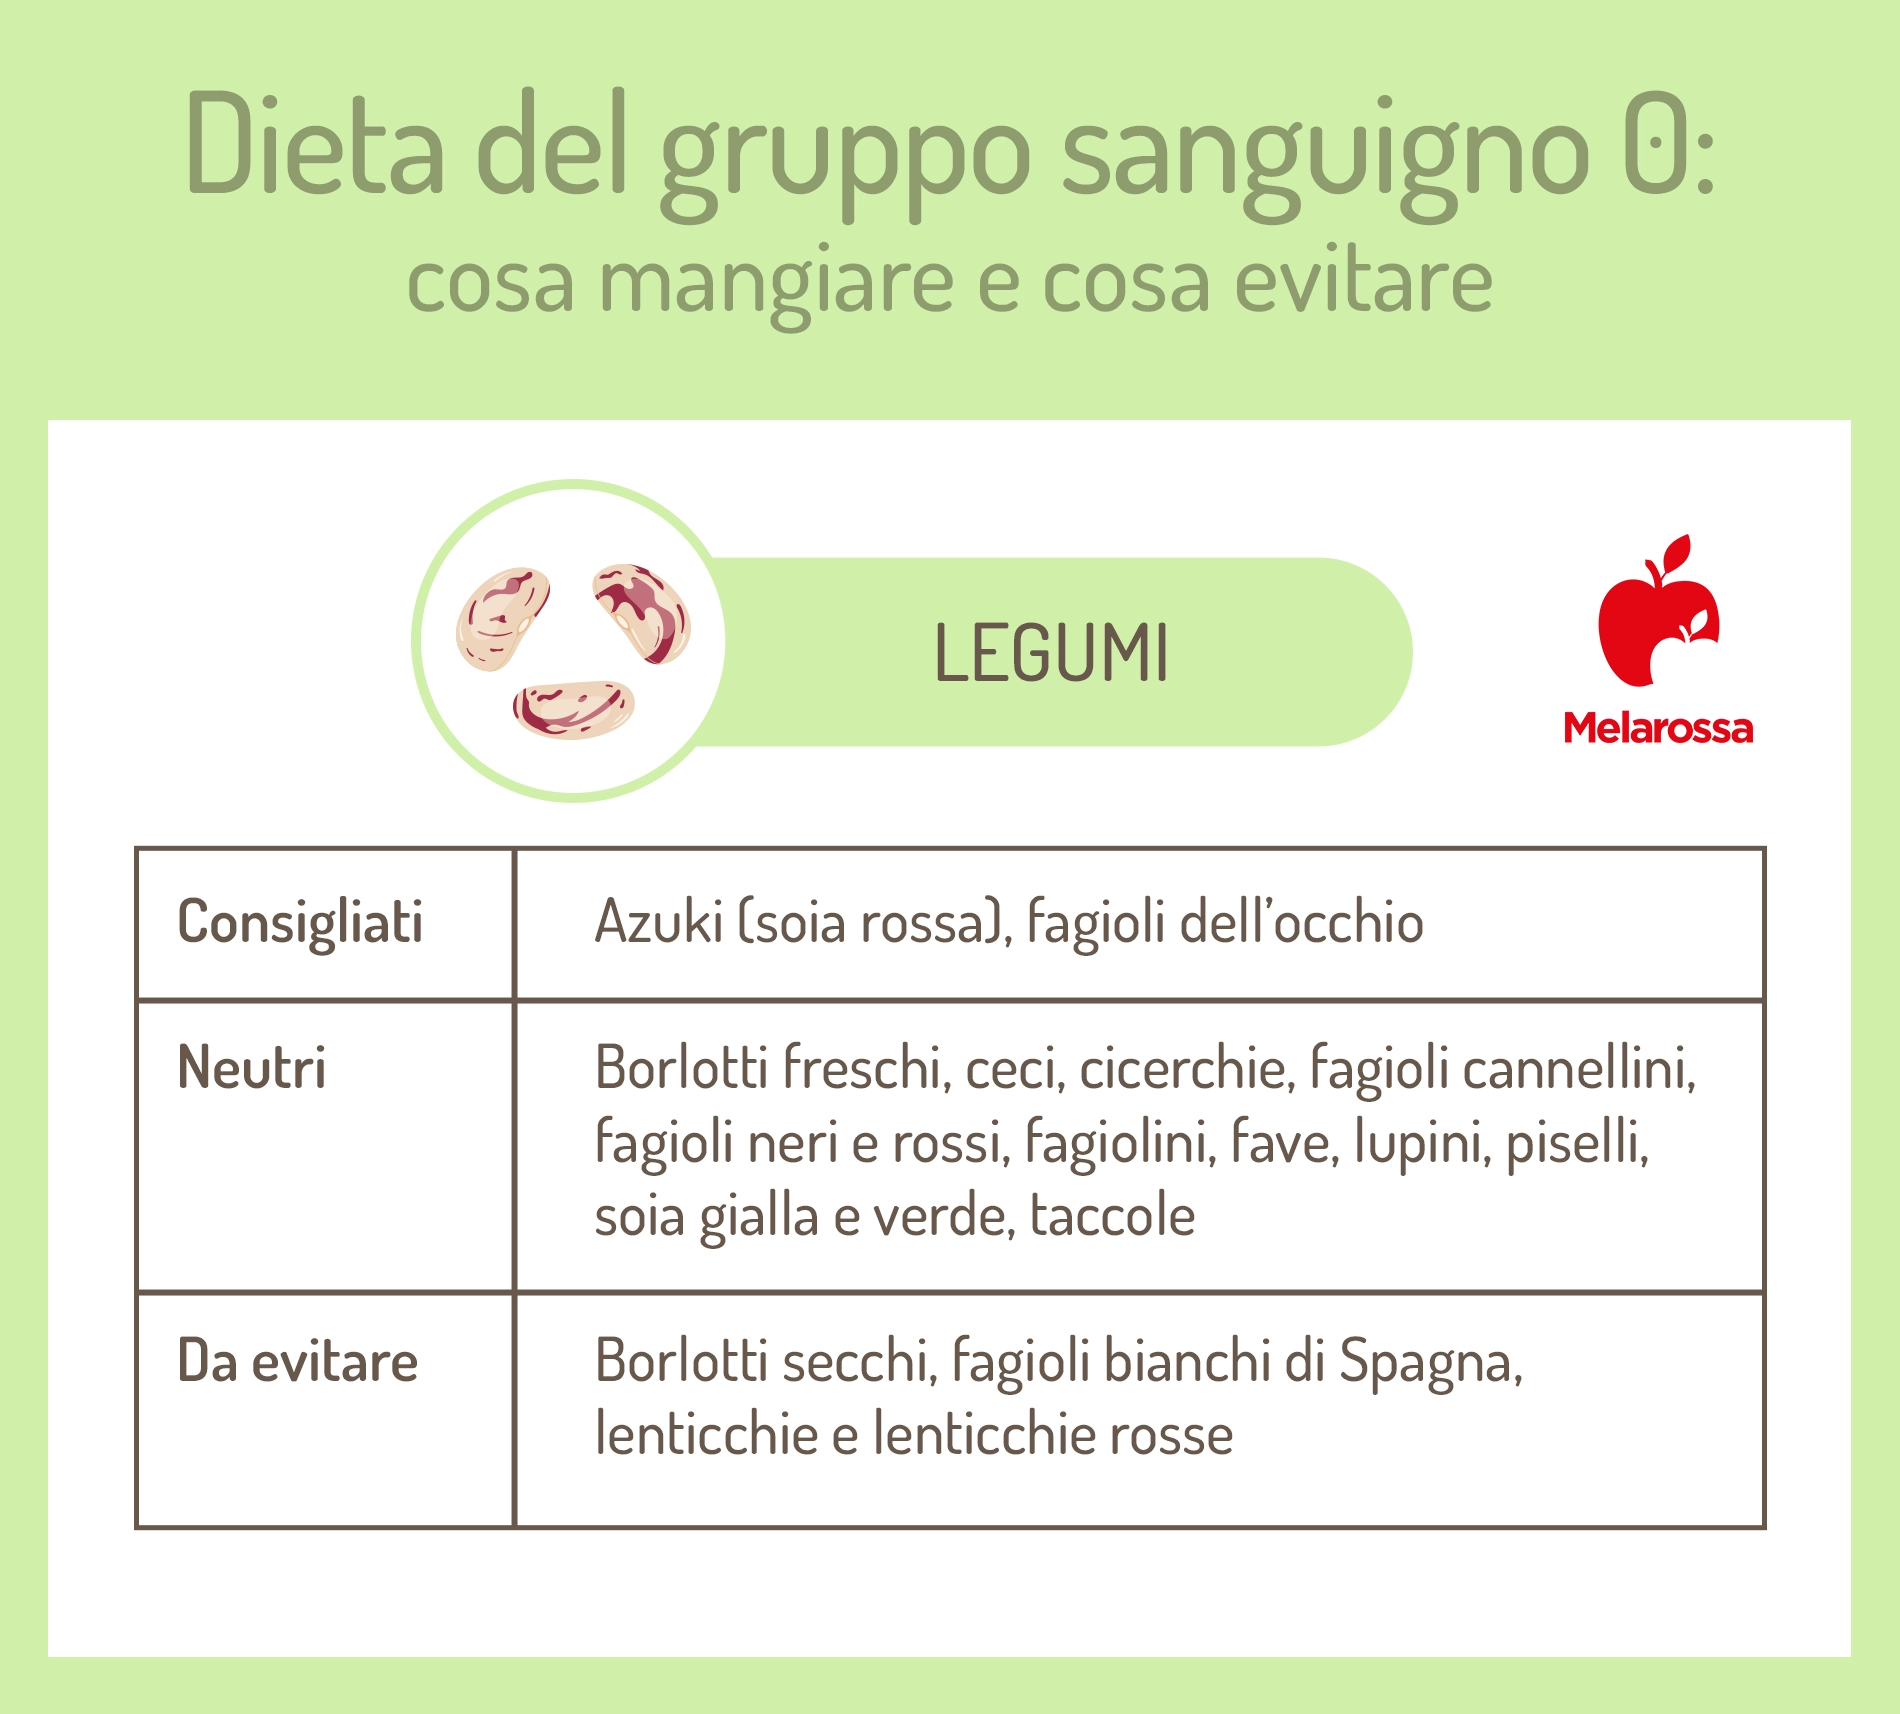 dieta gruppo sanguigno 0: legumi